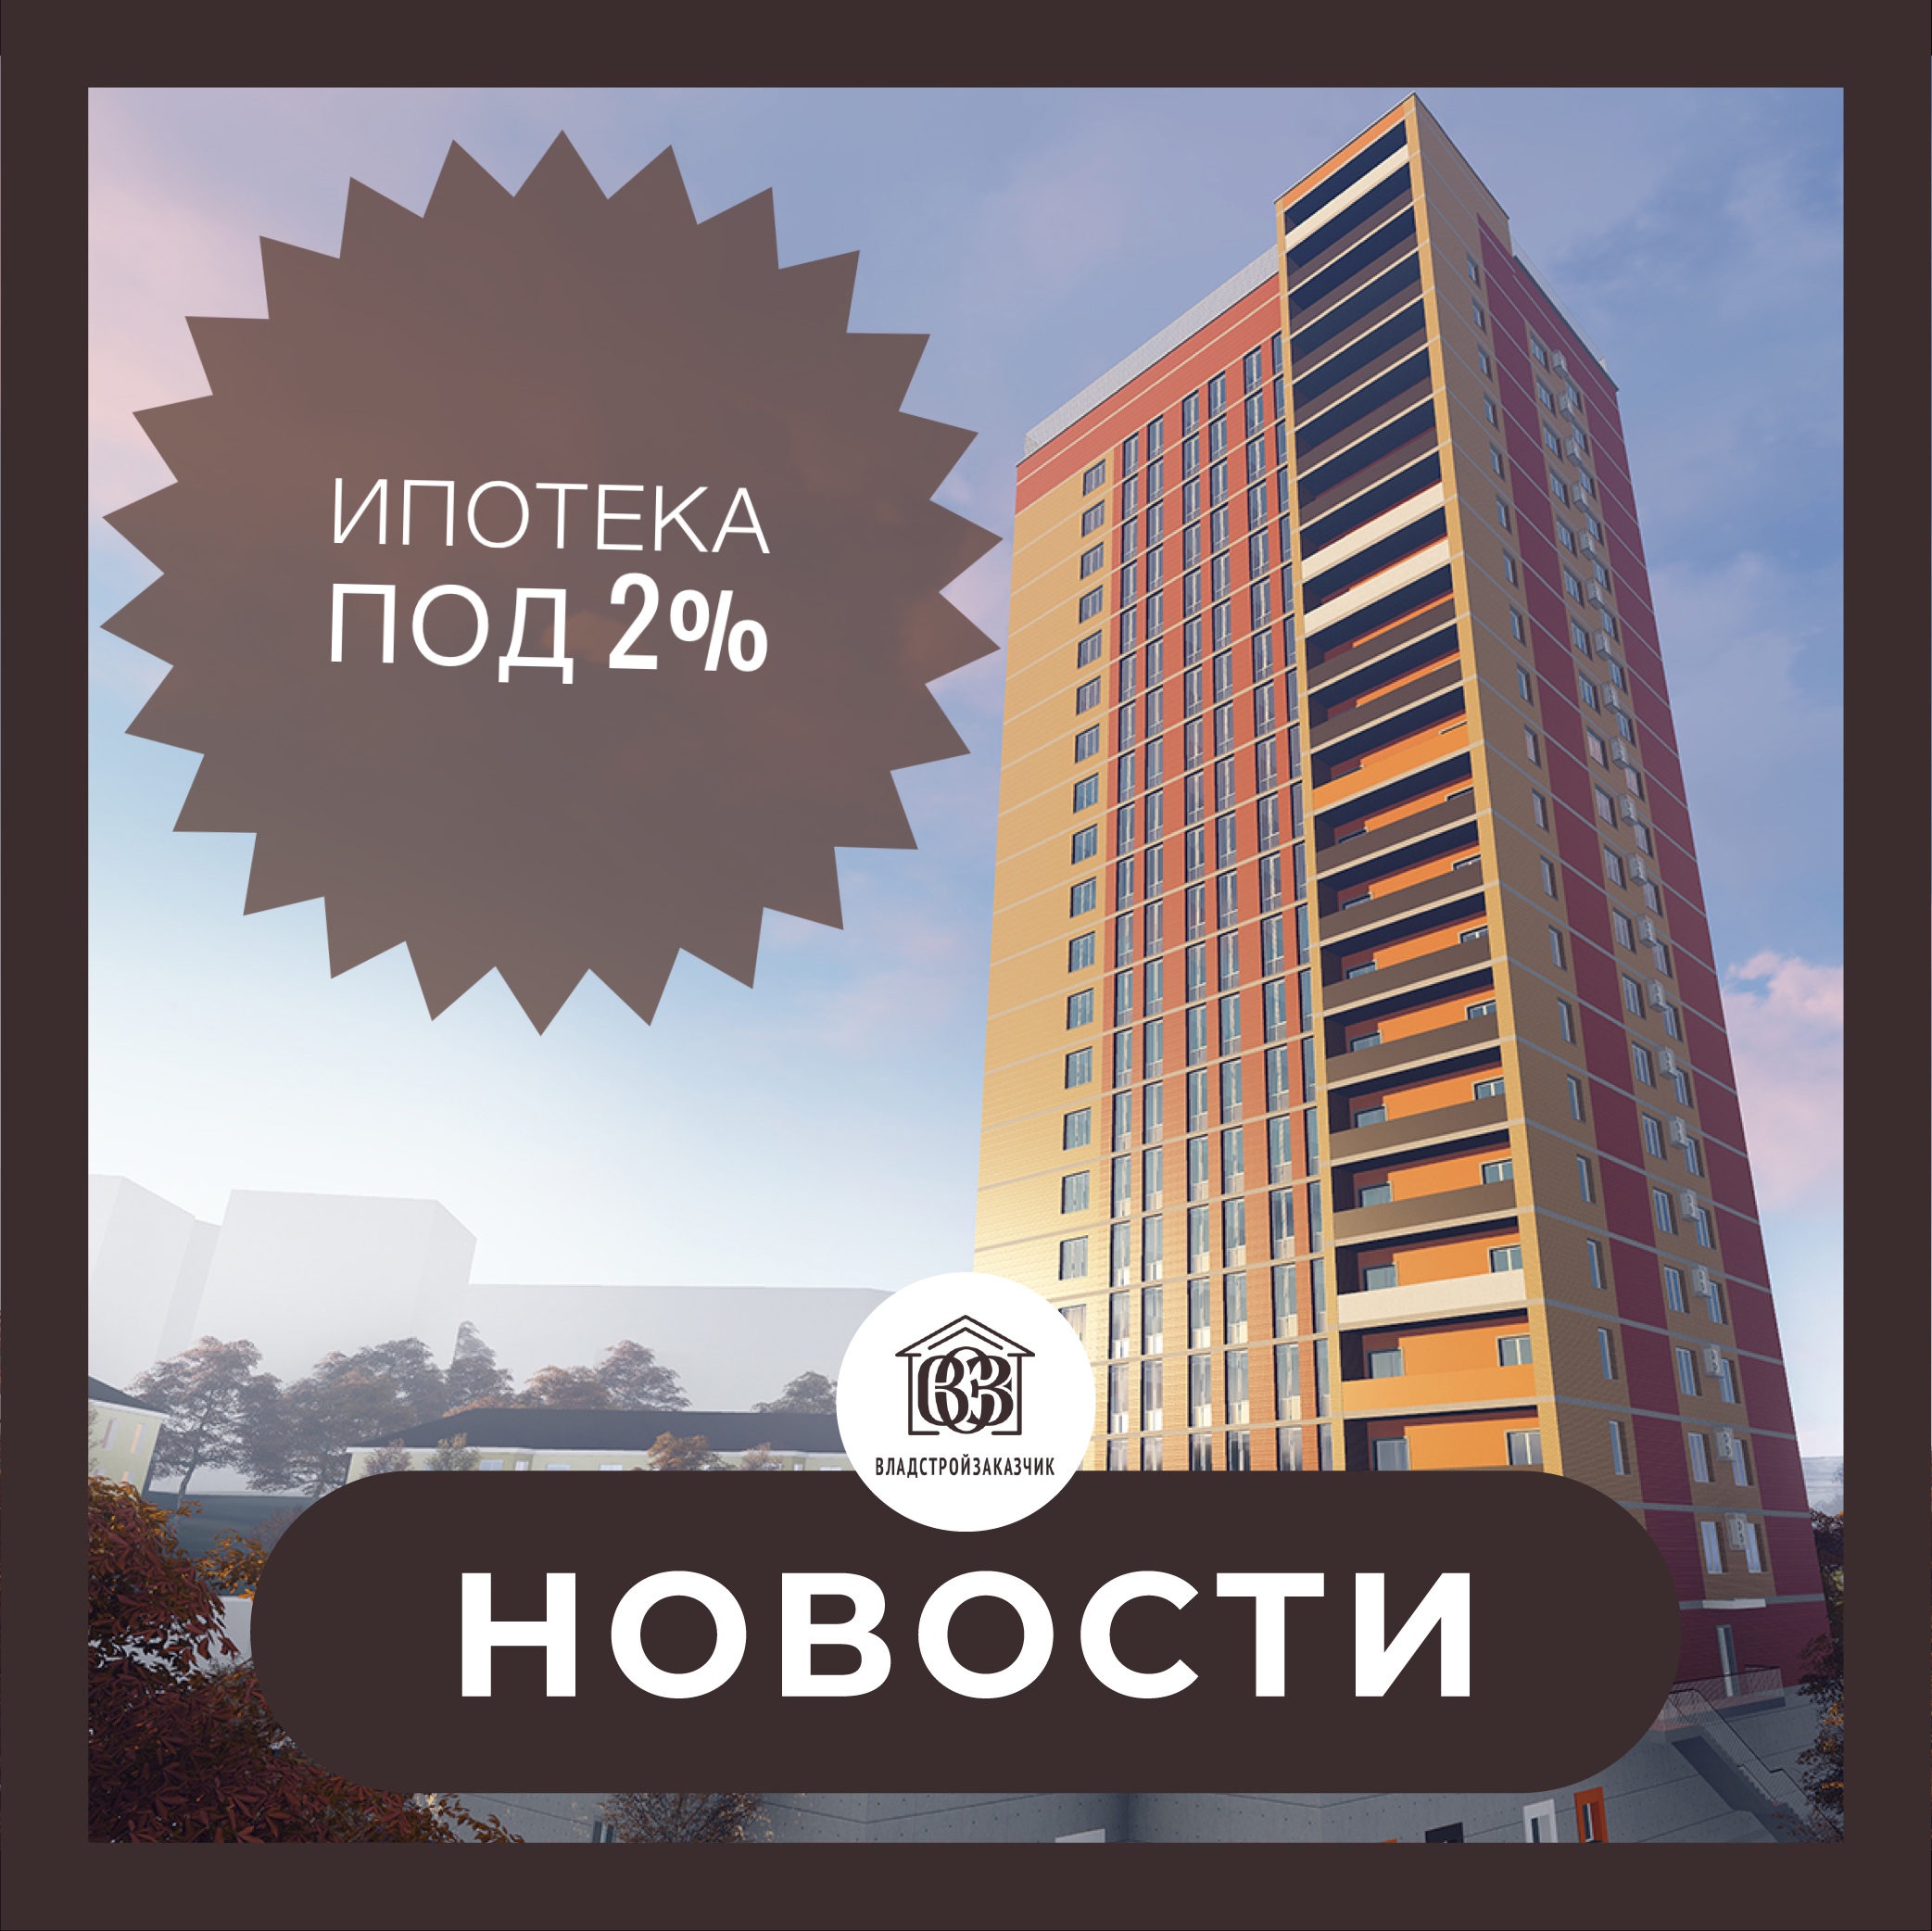 Купите квартиру в строящемся доме на Нестерова, 1 с помощью Дальневосточной ипотеки